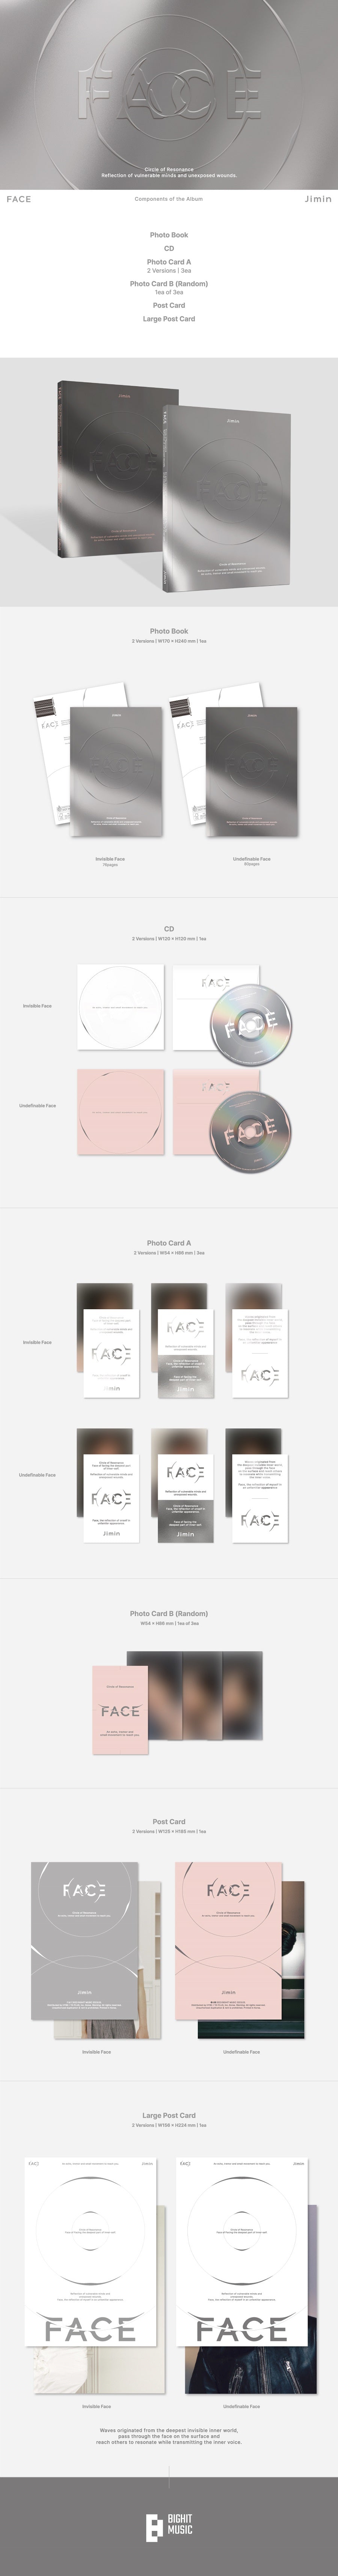 BTS : Jimin - FACE (Photobook Version)